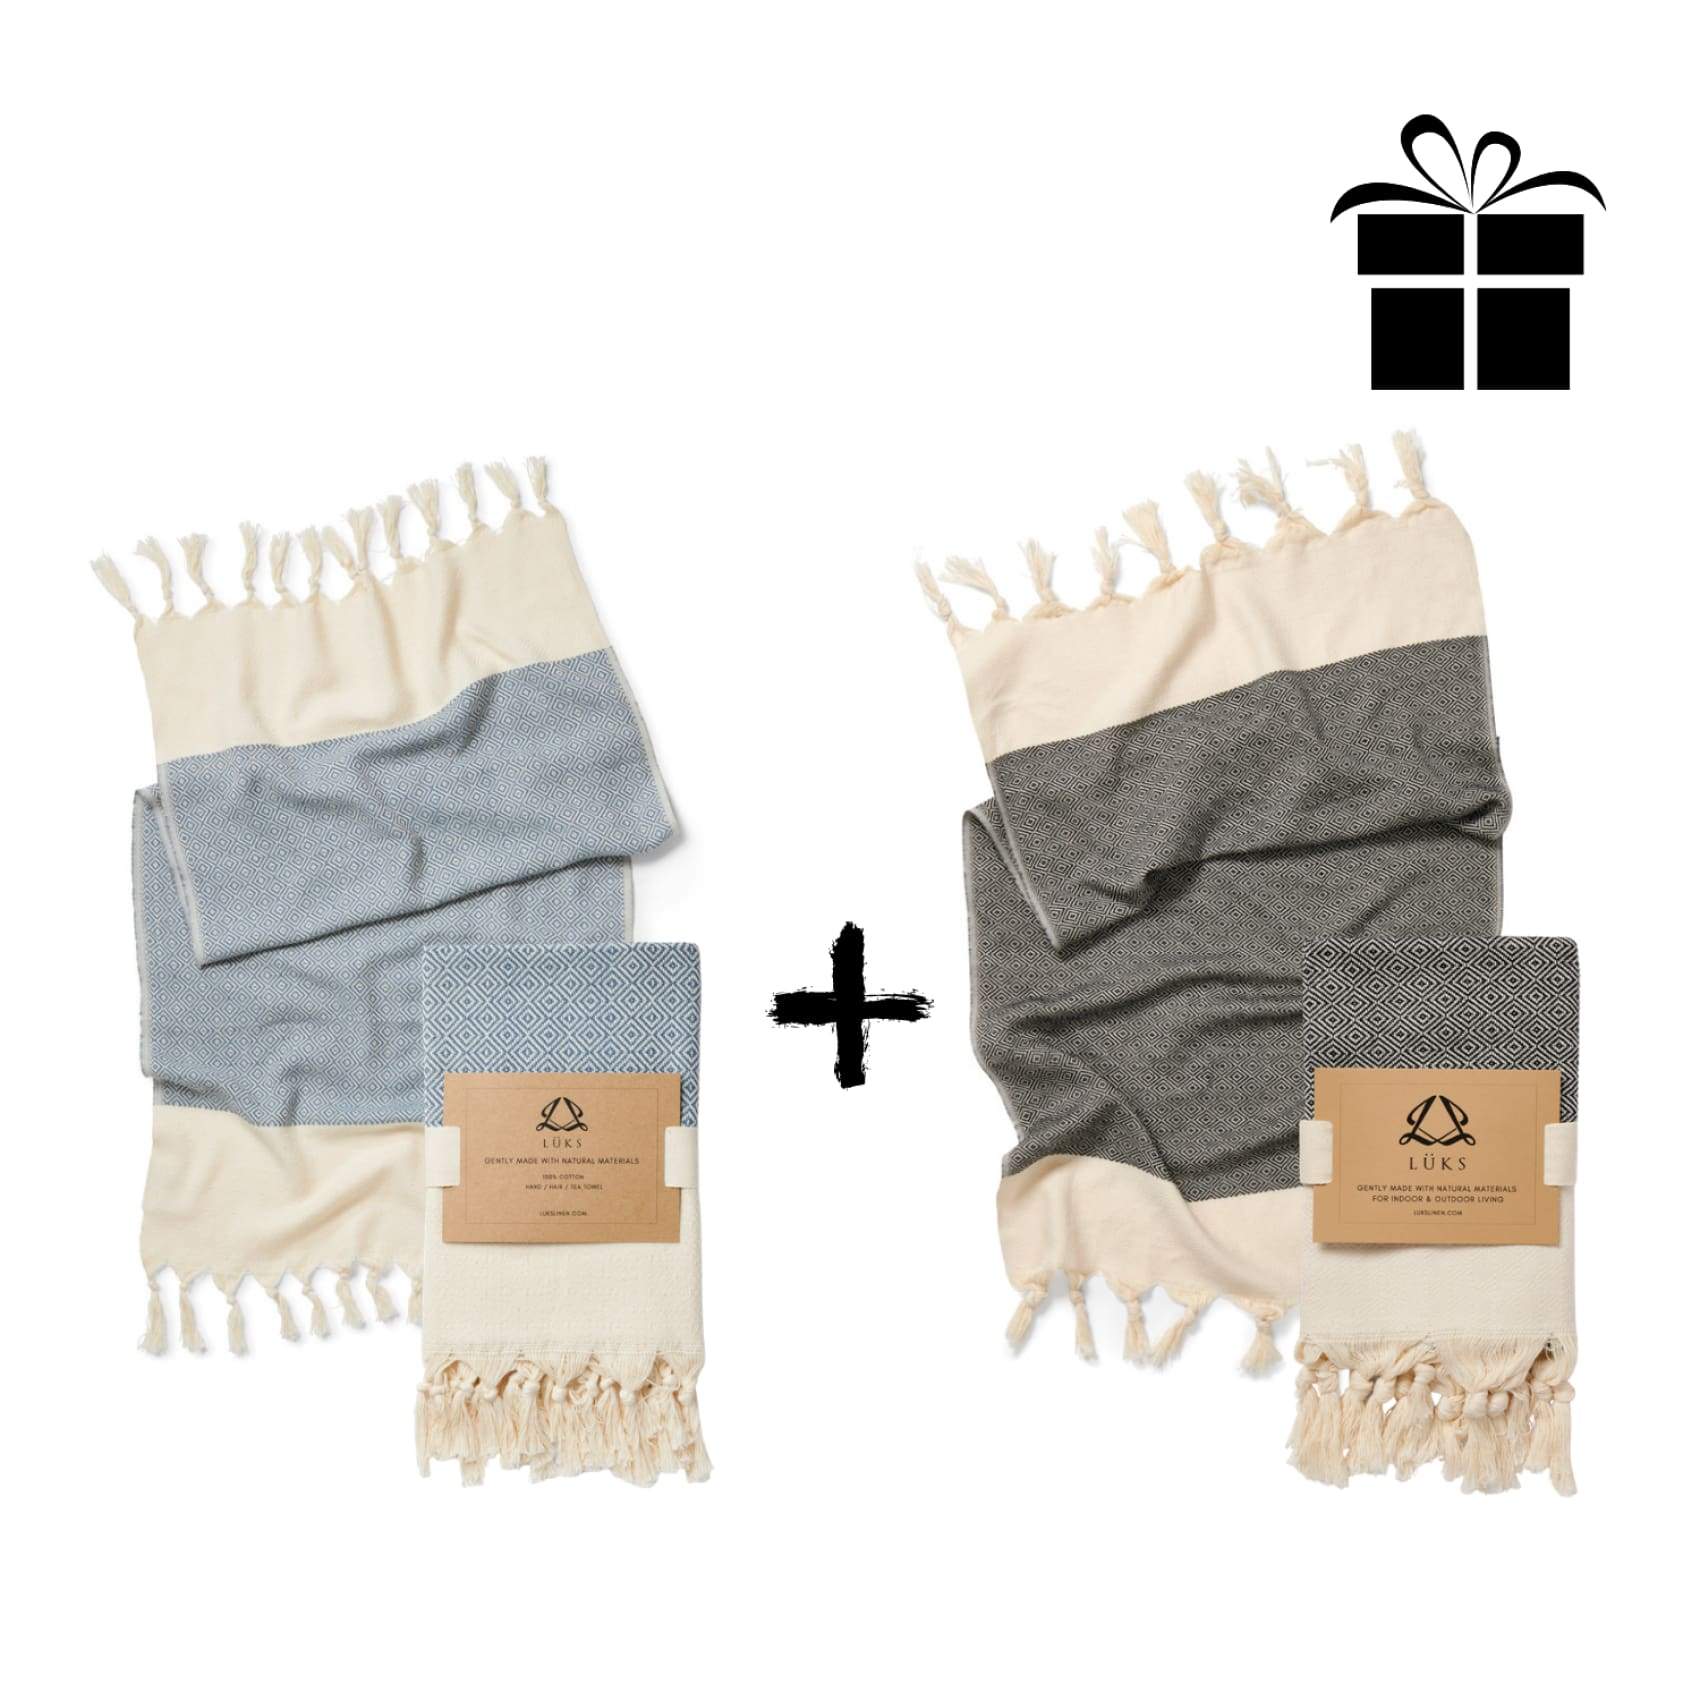 damla-hand-towel-set-bundle-variant-1-bundles-duo-mbcbundle-luks-linen-gesture-beige-glove-520.jpg